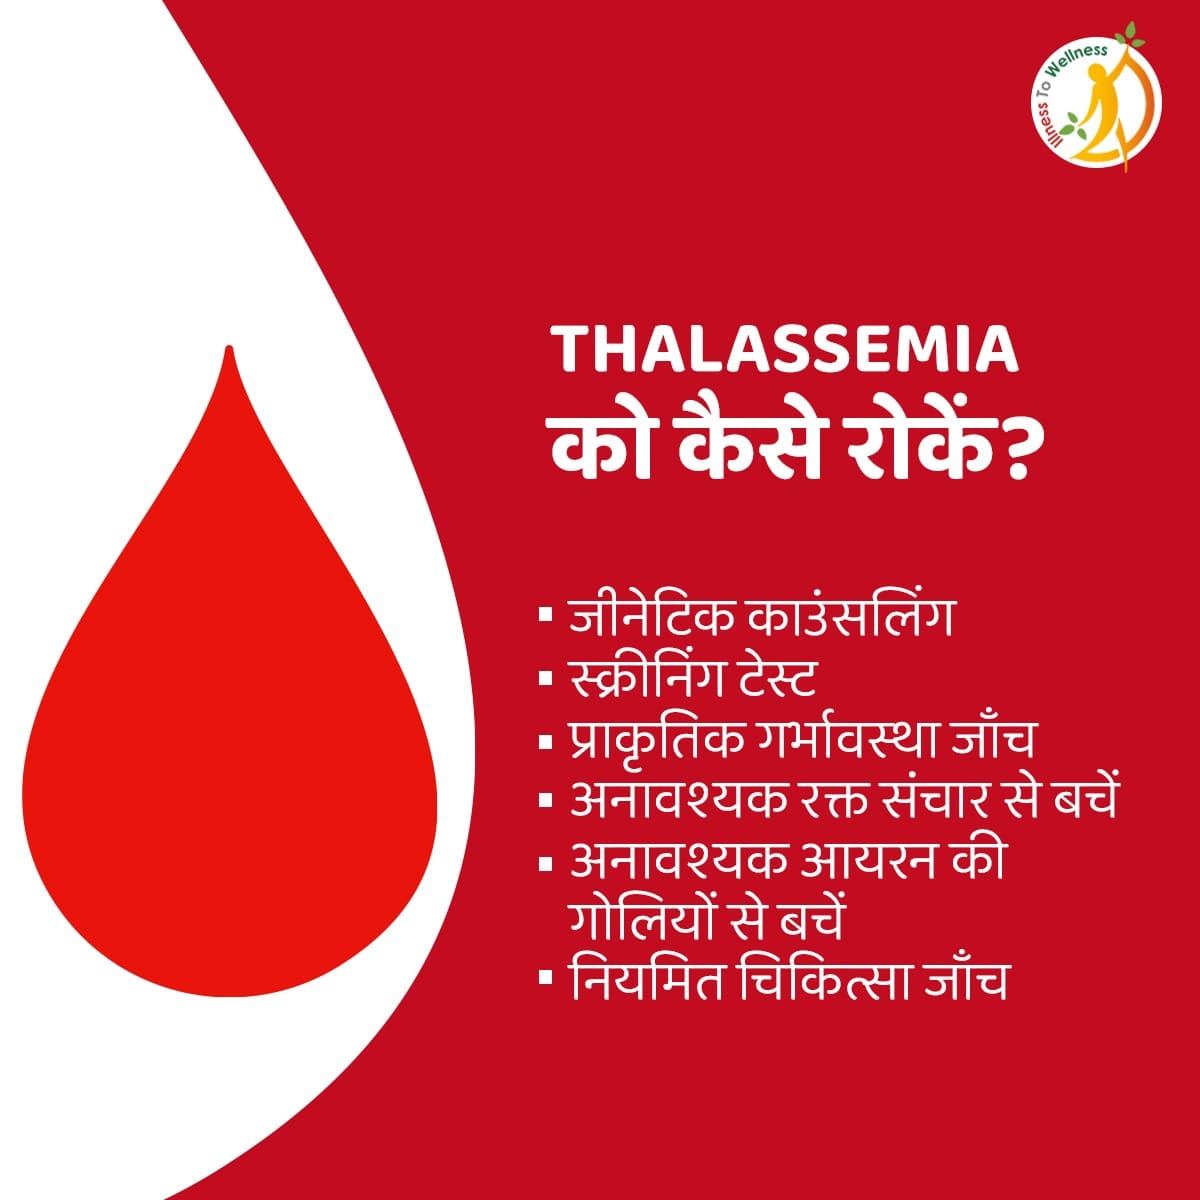 अपने परिवार के सदस्यों के स्वास्थ्य पर रखे ध्यान!
इन मापदंडो कों ध्यान में रखे और Thalassemia से बचे। ज्यादा जानकारी के लिए @itwsays कों फॉलो करें।